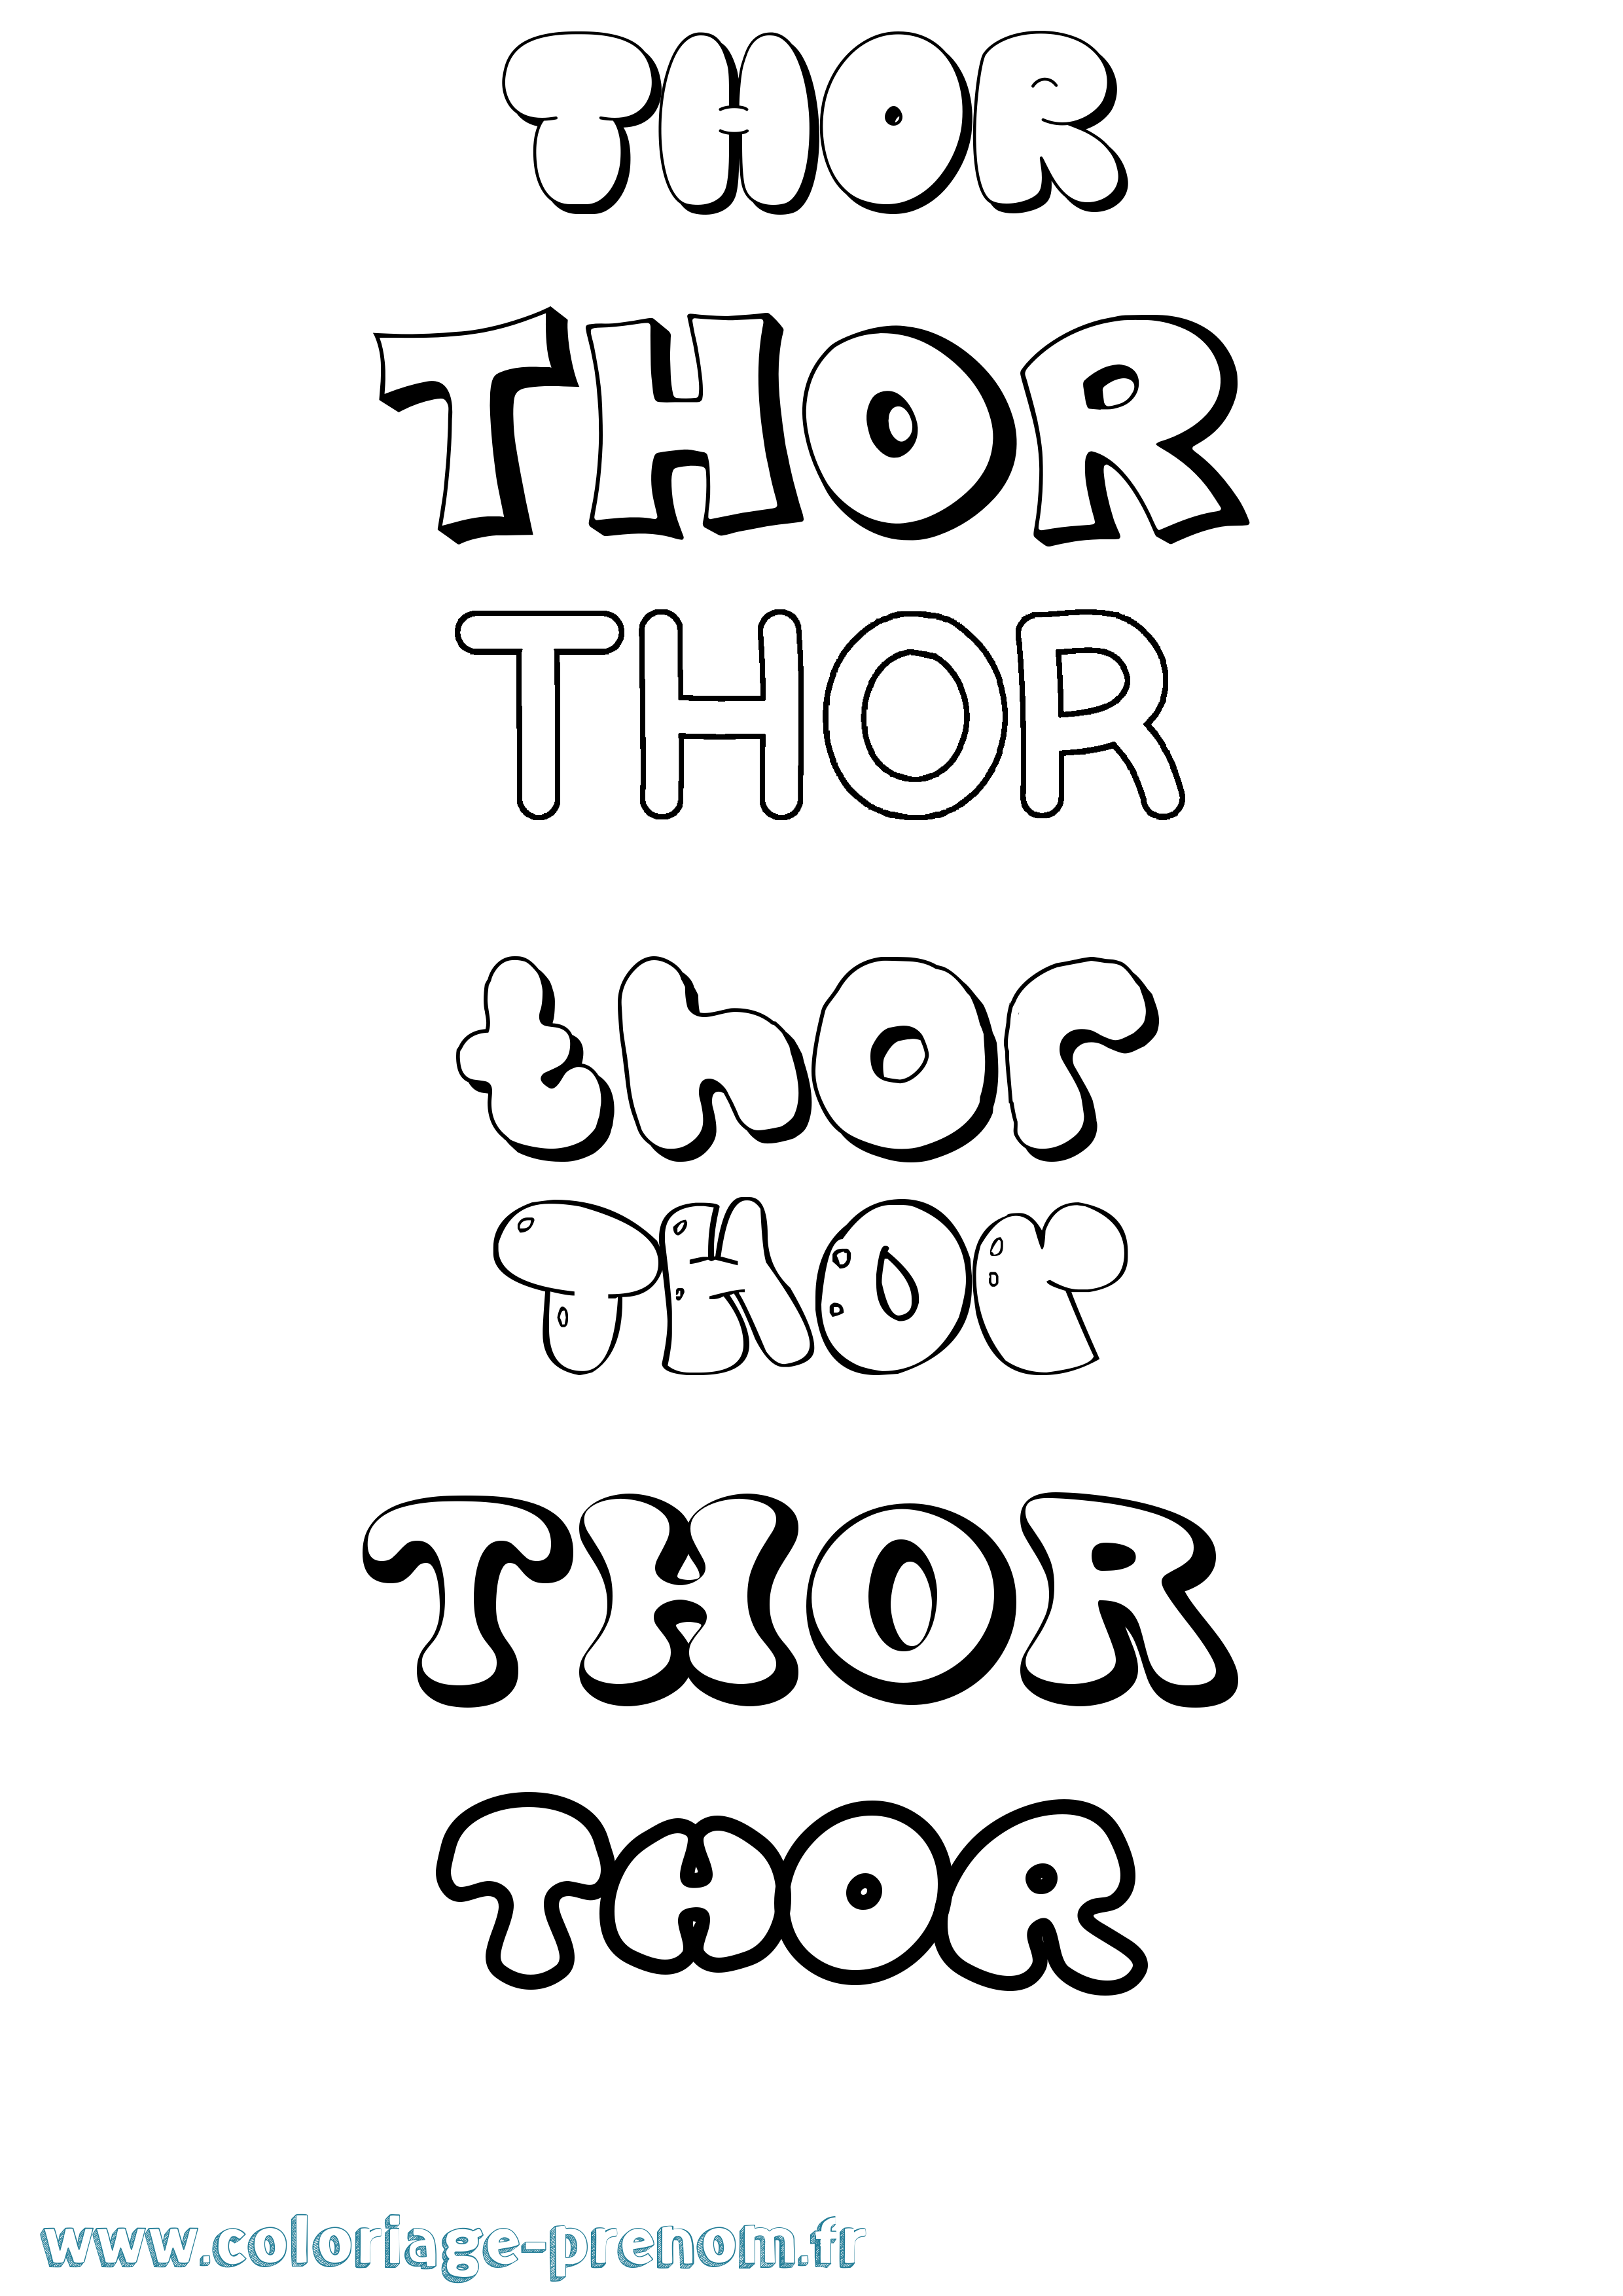 Coloriage prénom Thor Bubble